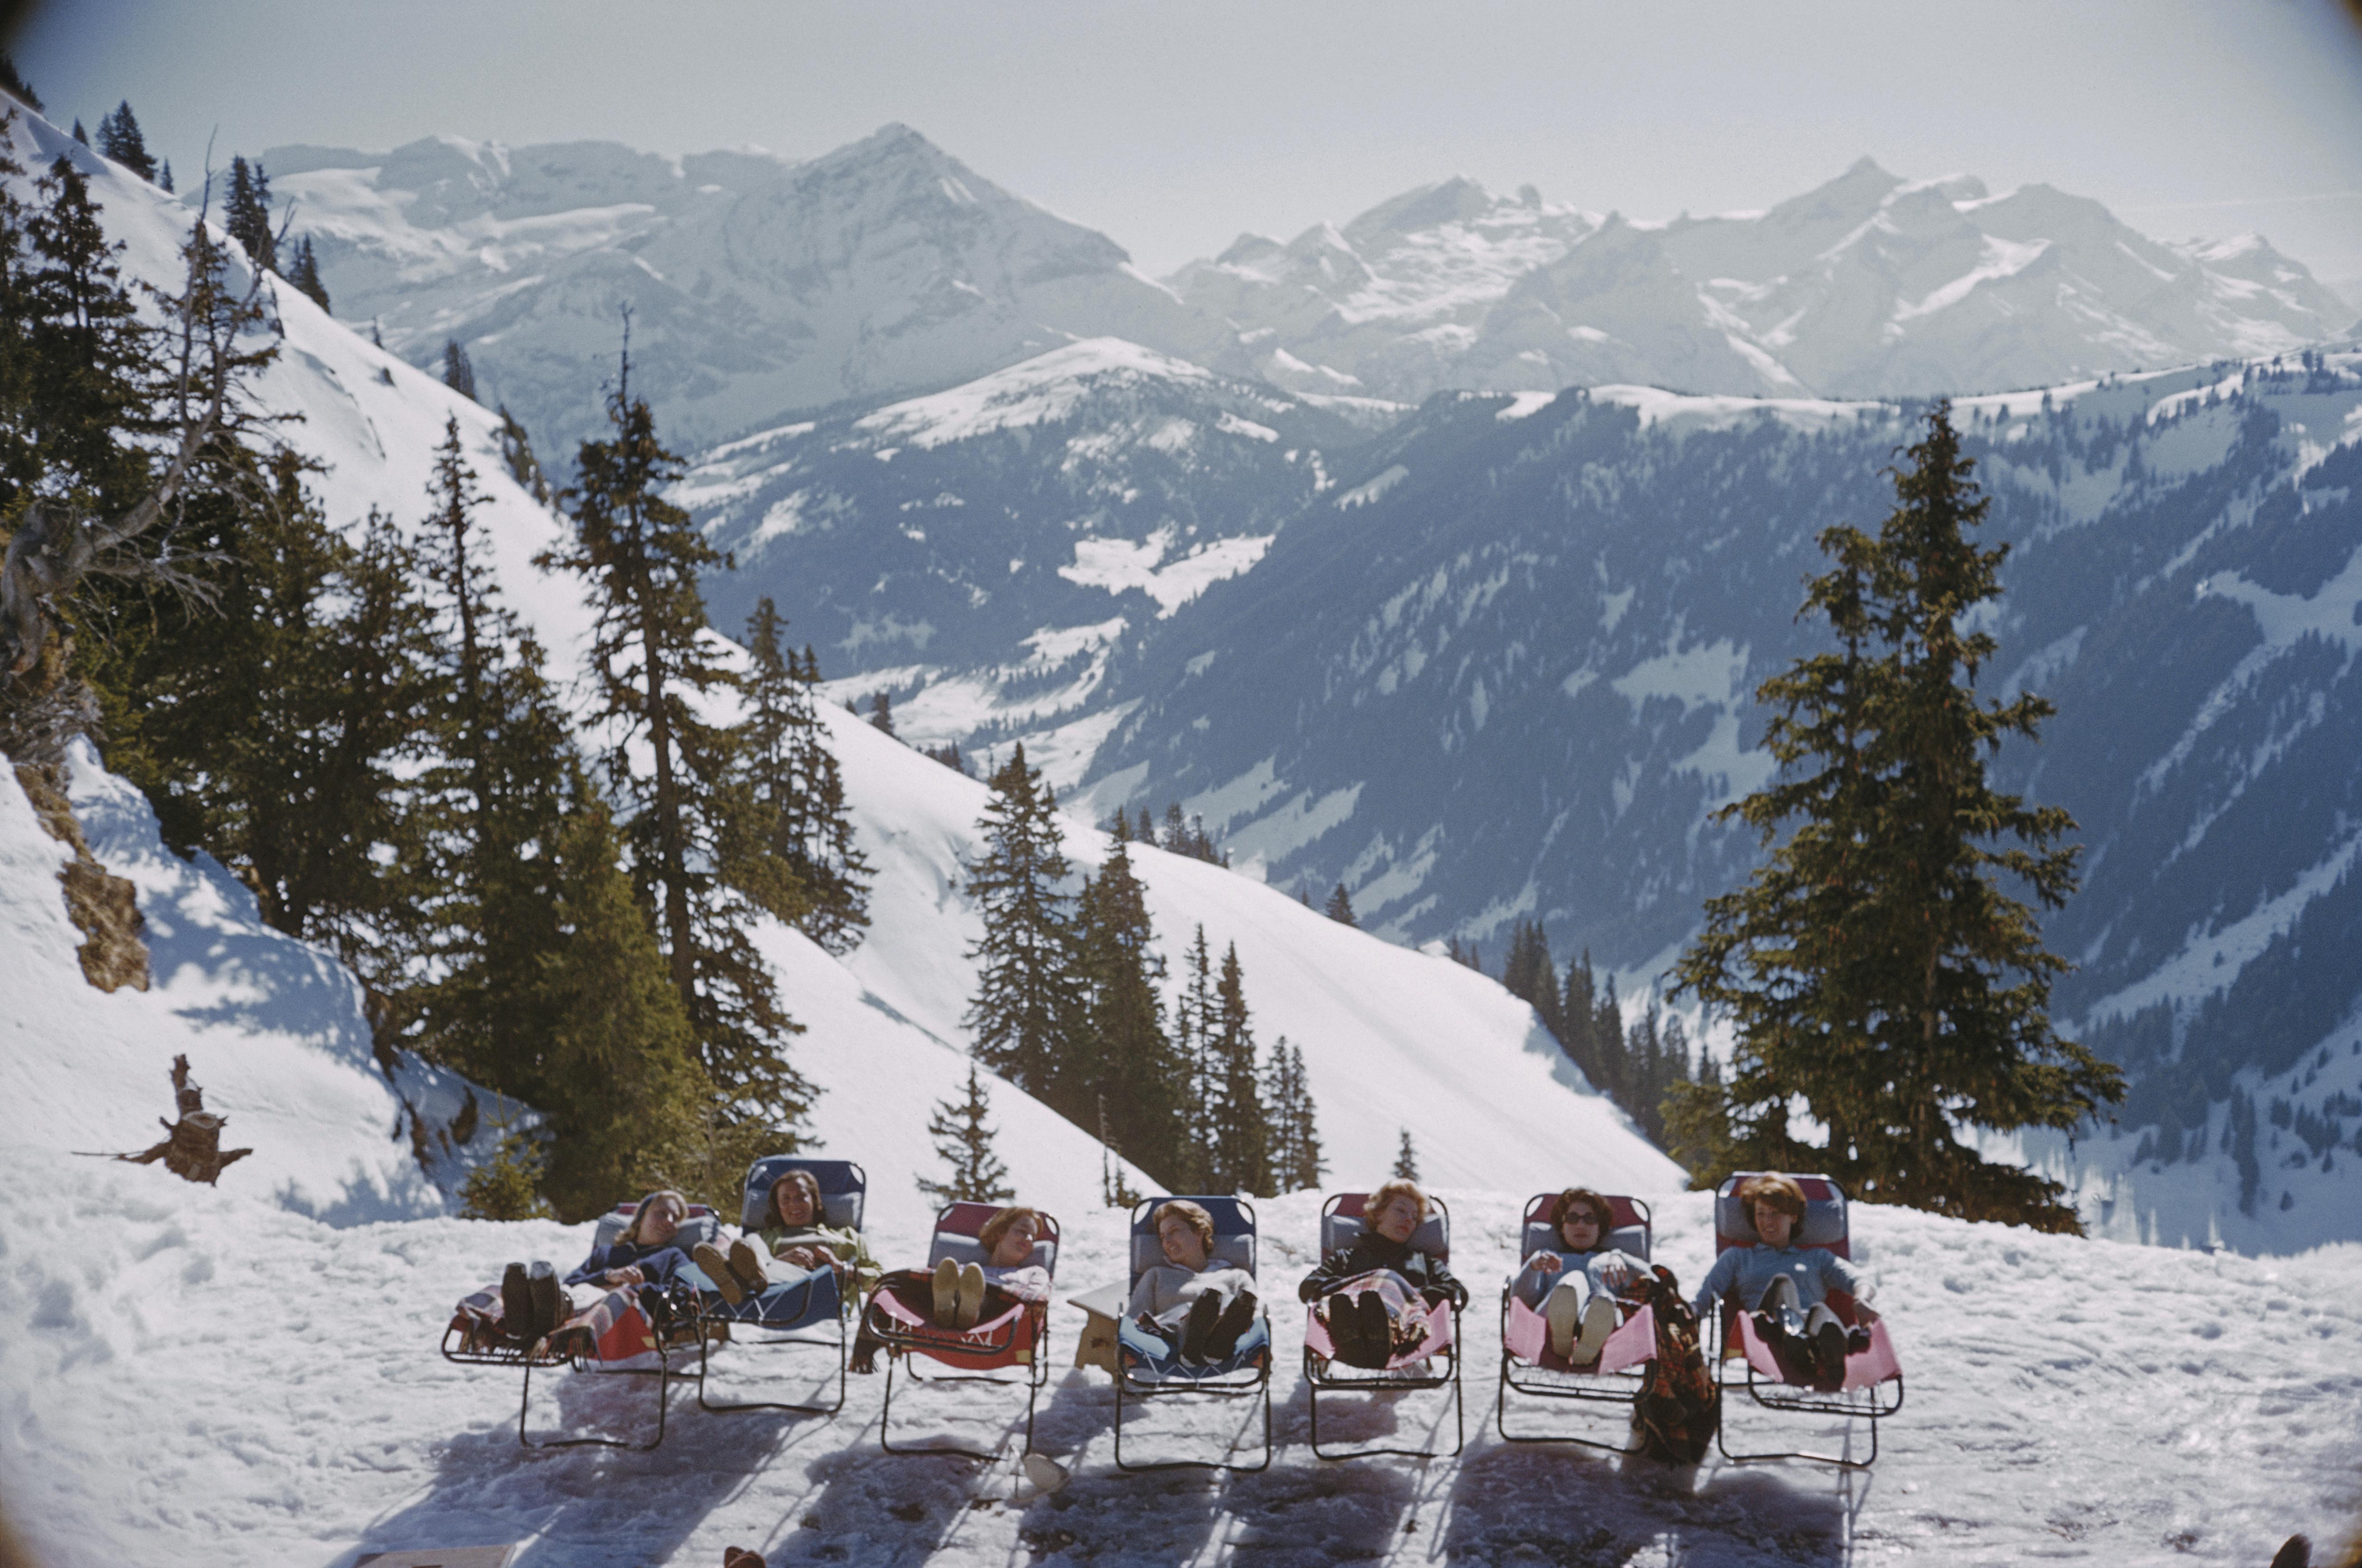 Vacanciers dans des chaises longues sur les pistes de Gstaad, Suisse, mars 1961. 

SLIM AARONS
Se prélasser à Gstaad
Tirage chromogène Lambda
Imprimé plus tard
Slim Aarons Estate Edition
Expédition gratuite du revendeur à votre encadreur, dans le